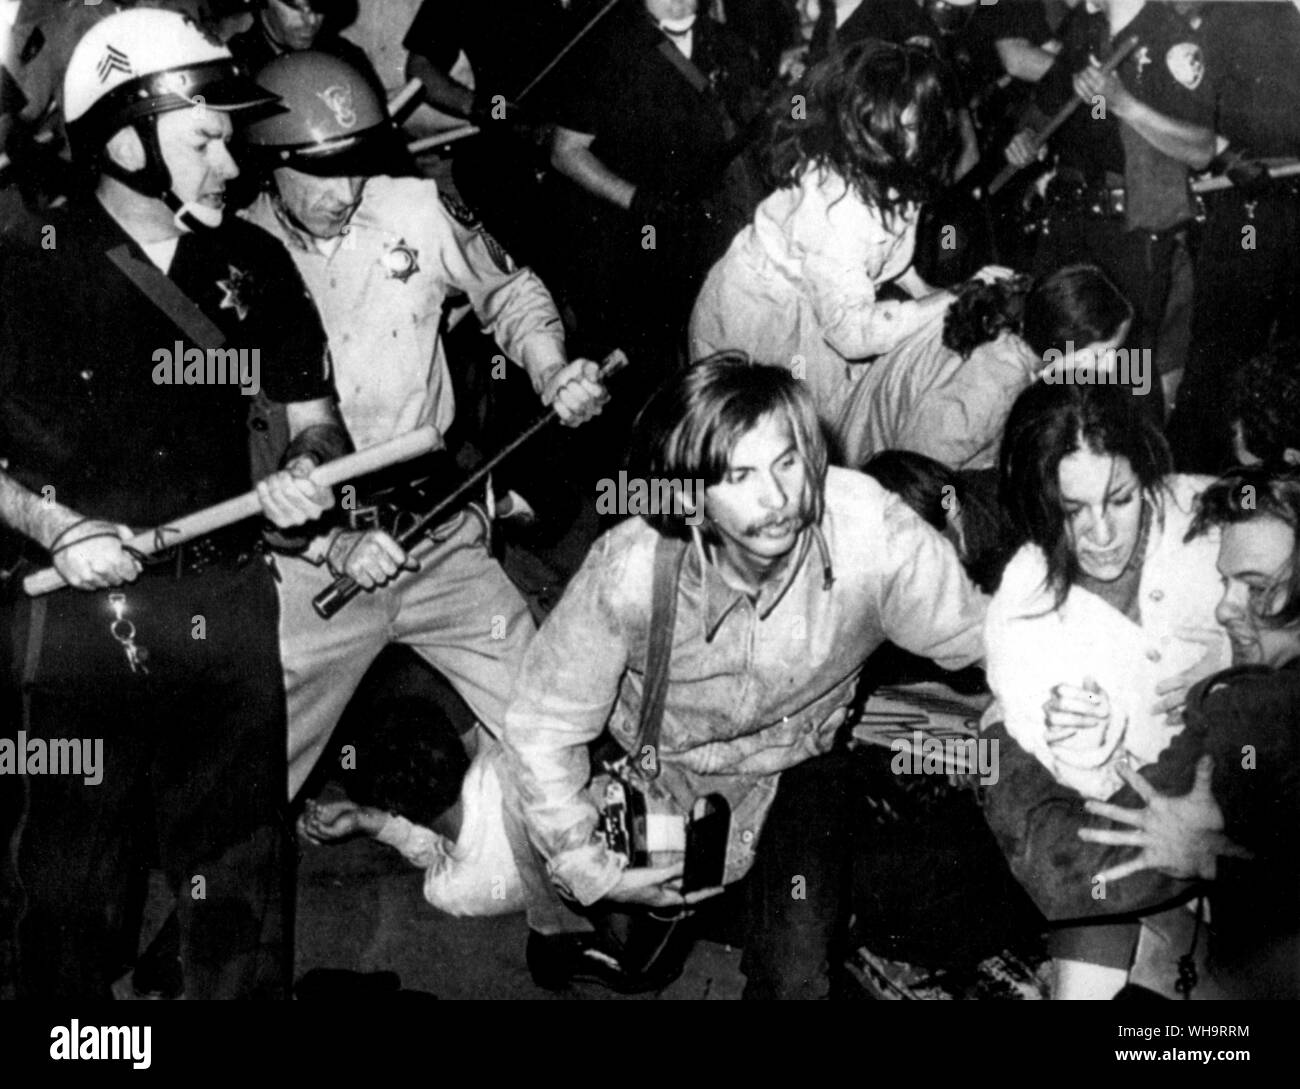 Oktober 17 1967: Oakland, Kalifornien, USA: Club swinging Polizei anti-Entwurf der Demonstranten von der Straße vor die Oakland Army Induction Center. Viele der 3500 Demonstranten waren Studenten. Stockfoto